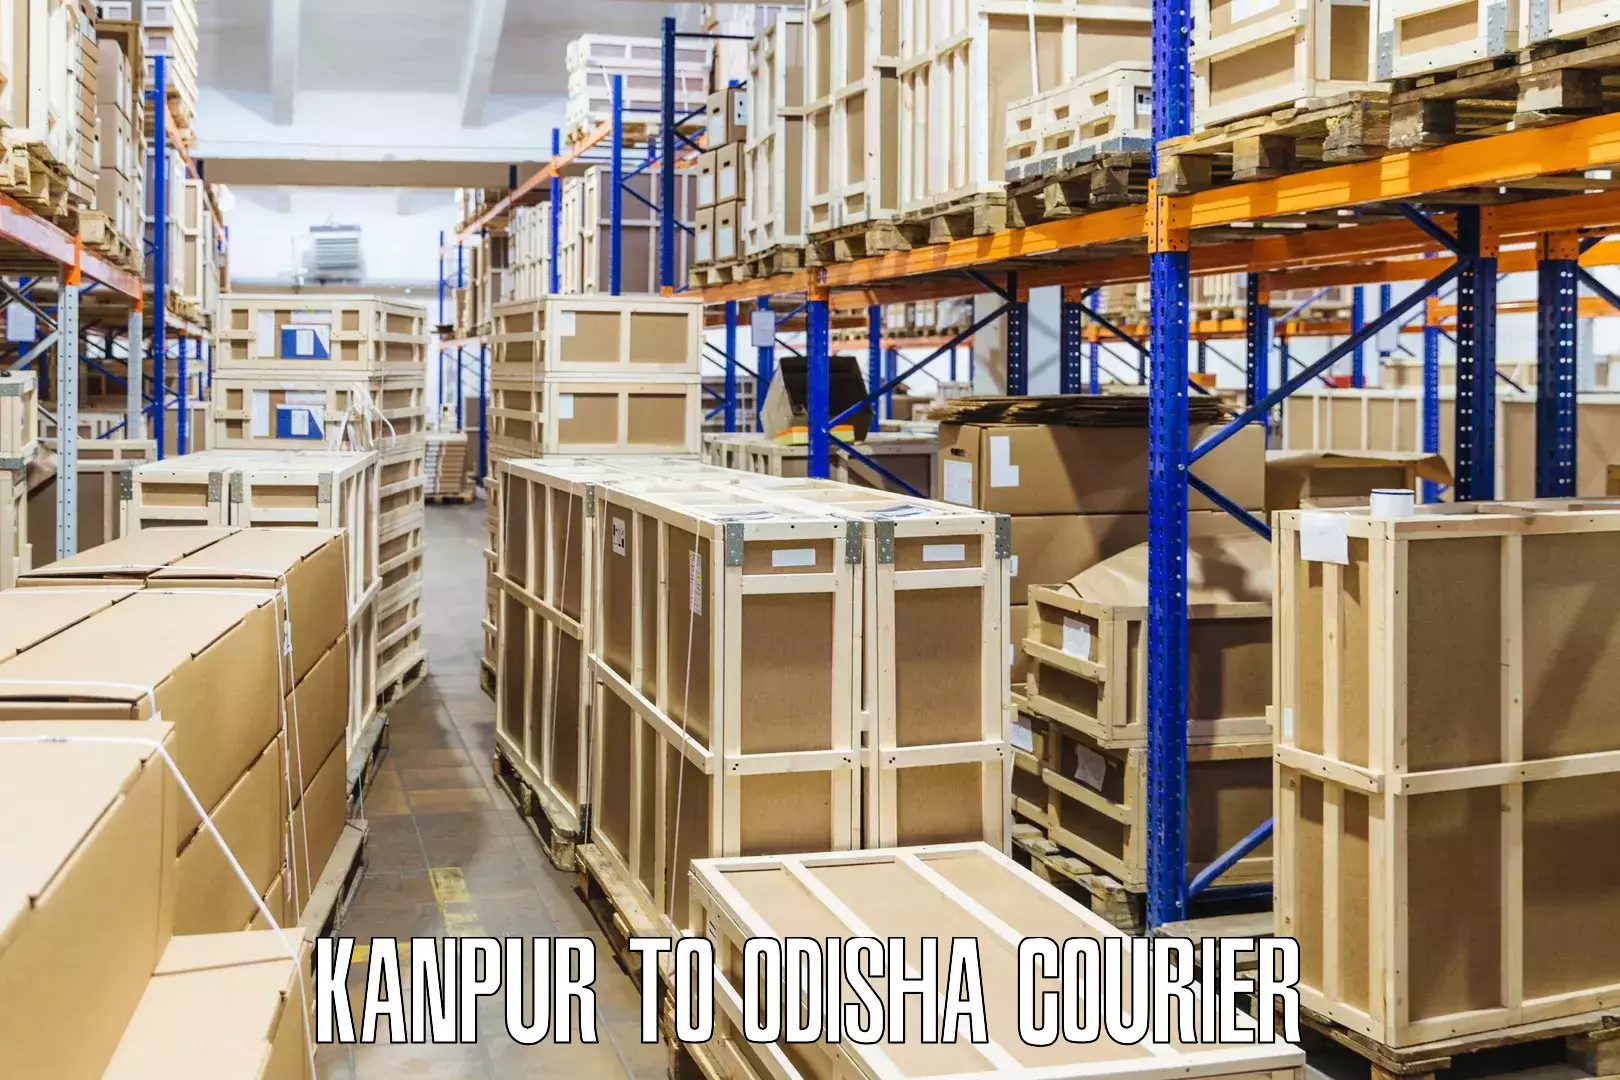 Efficient freight service Kanpur to Sundergarh